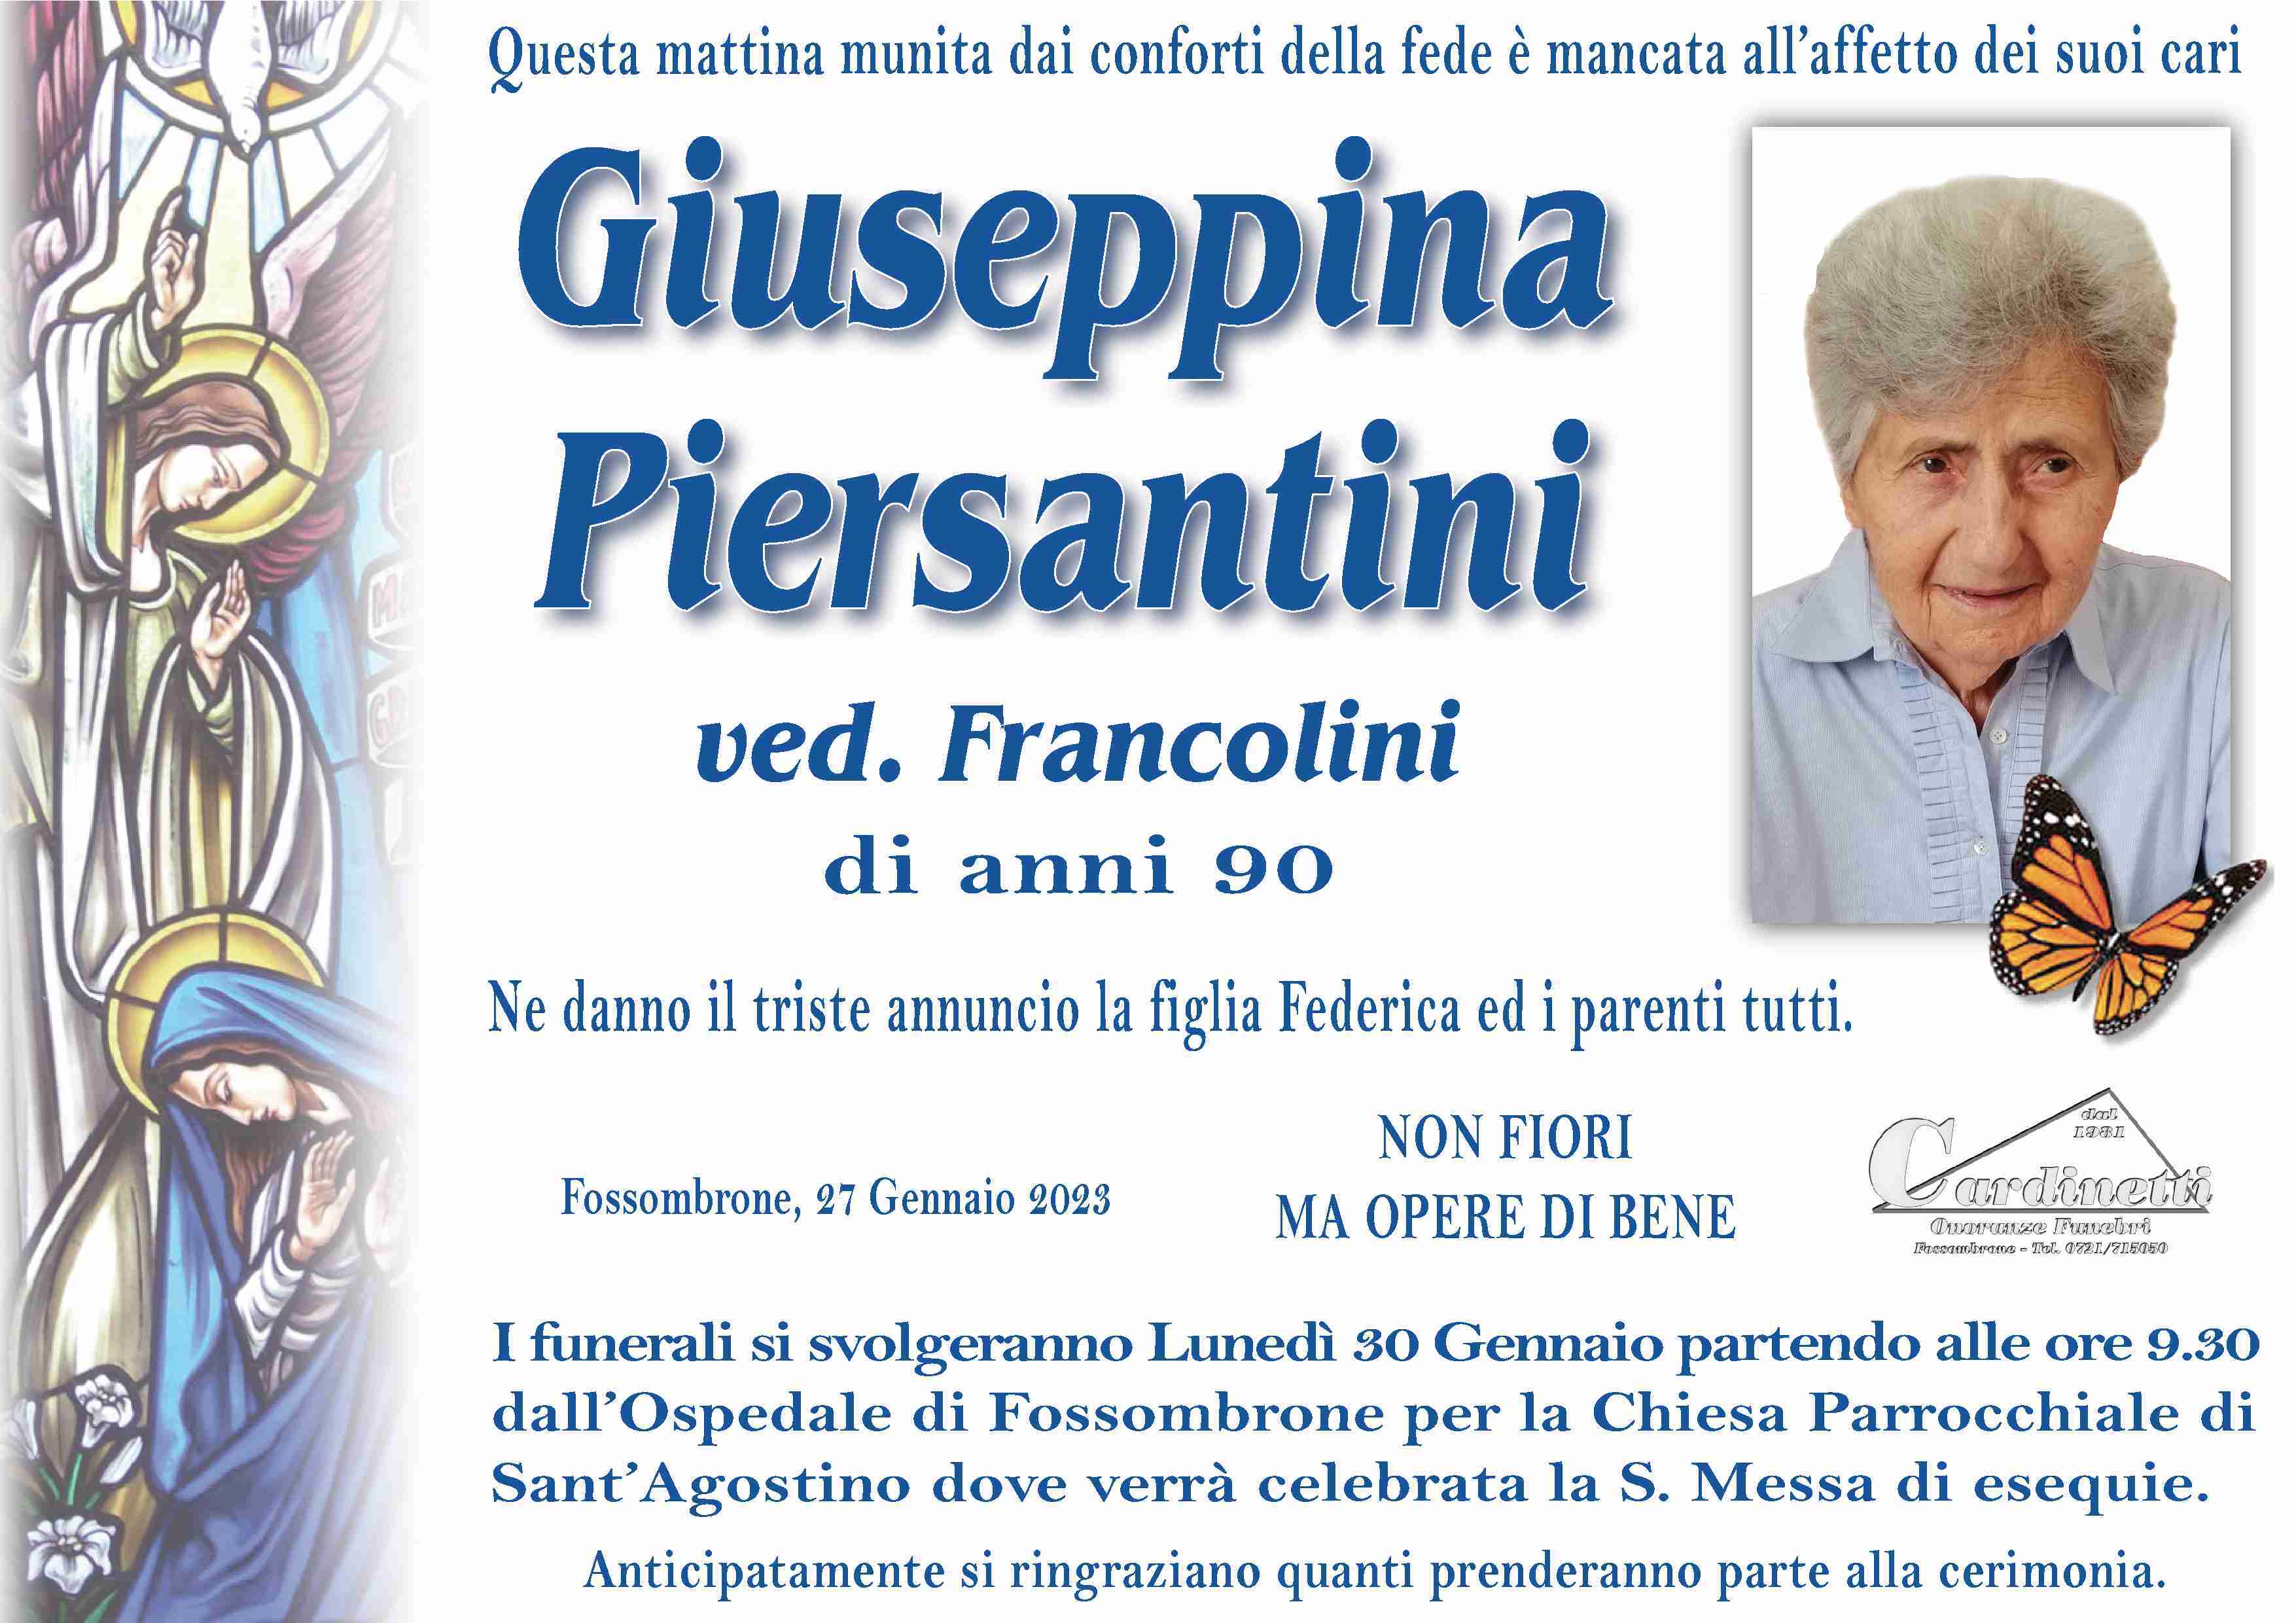 Giuseppina Piersantini